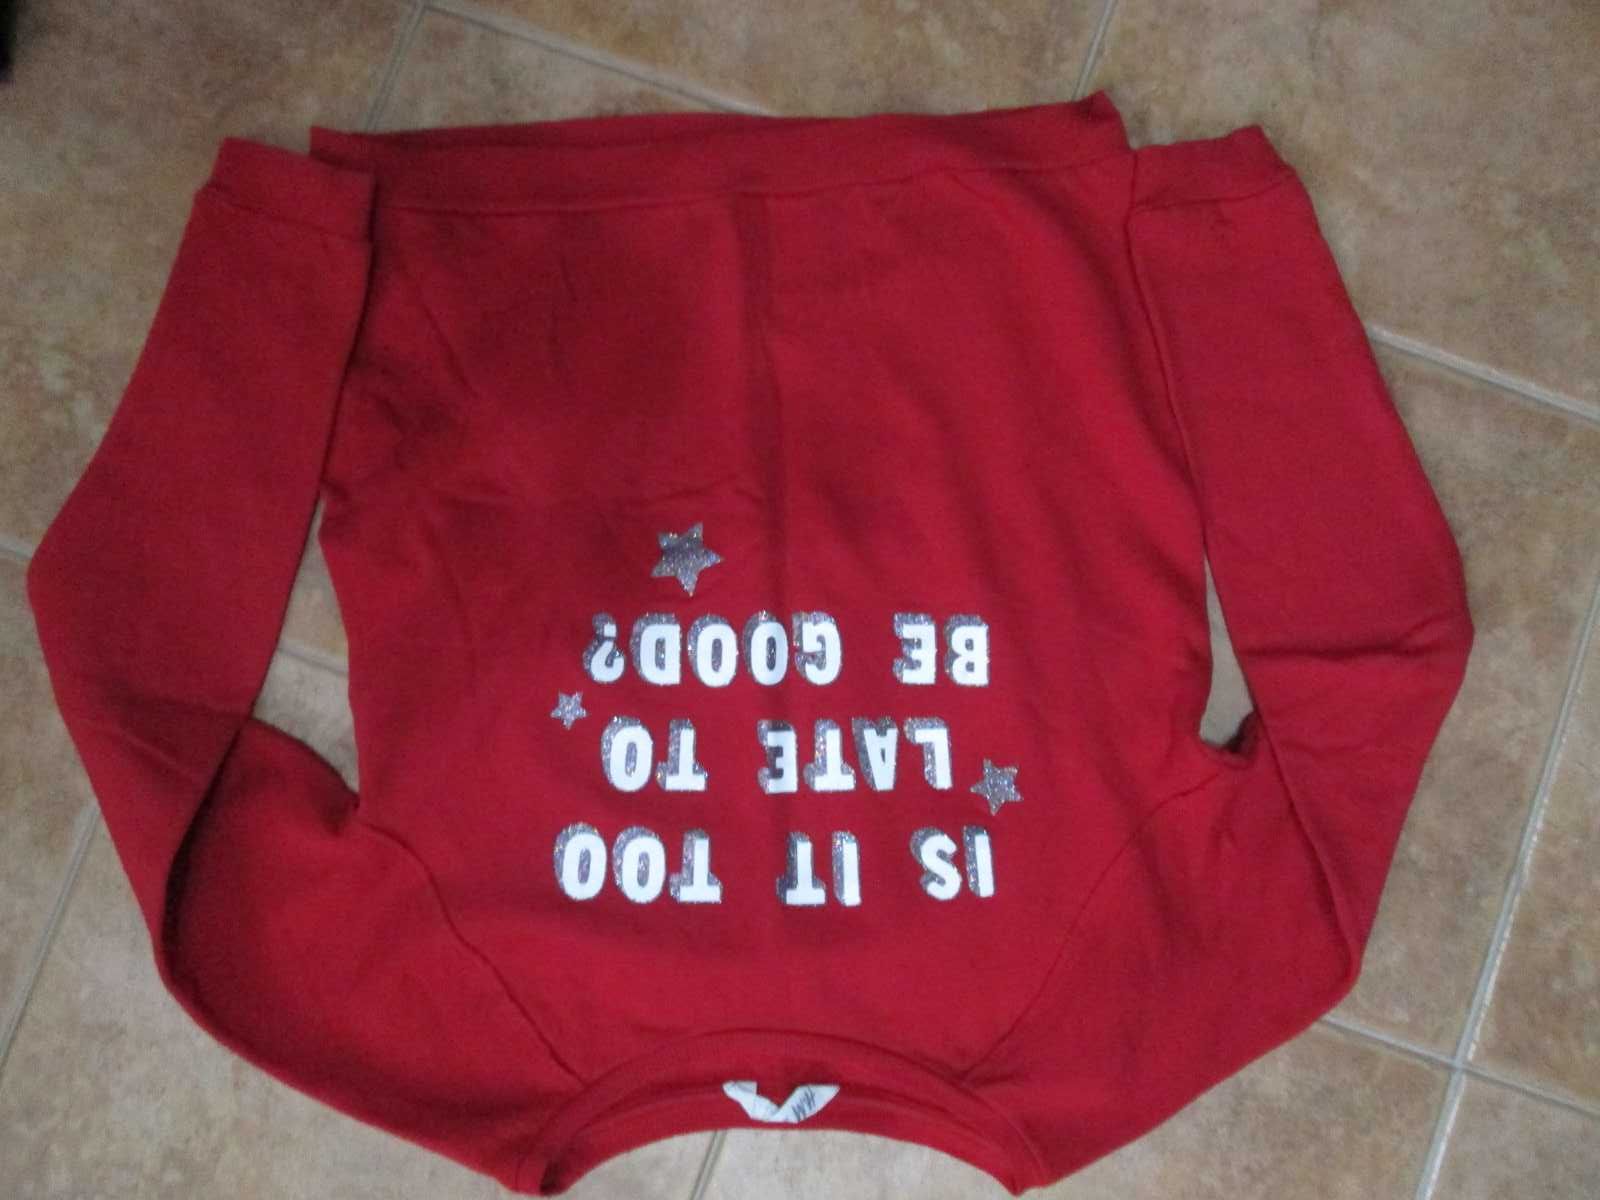 varias camisolas-10/12 anos